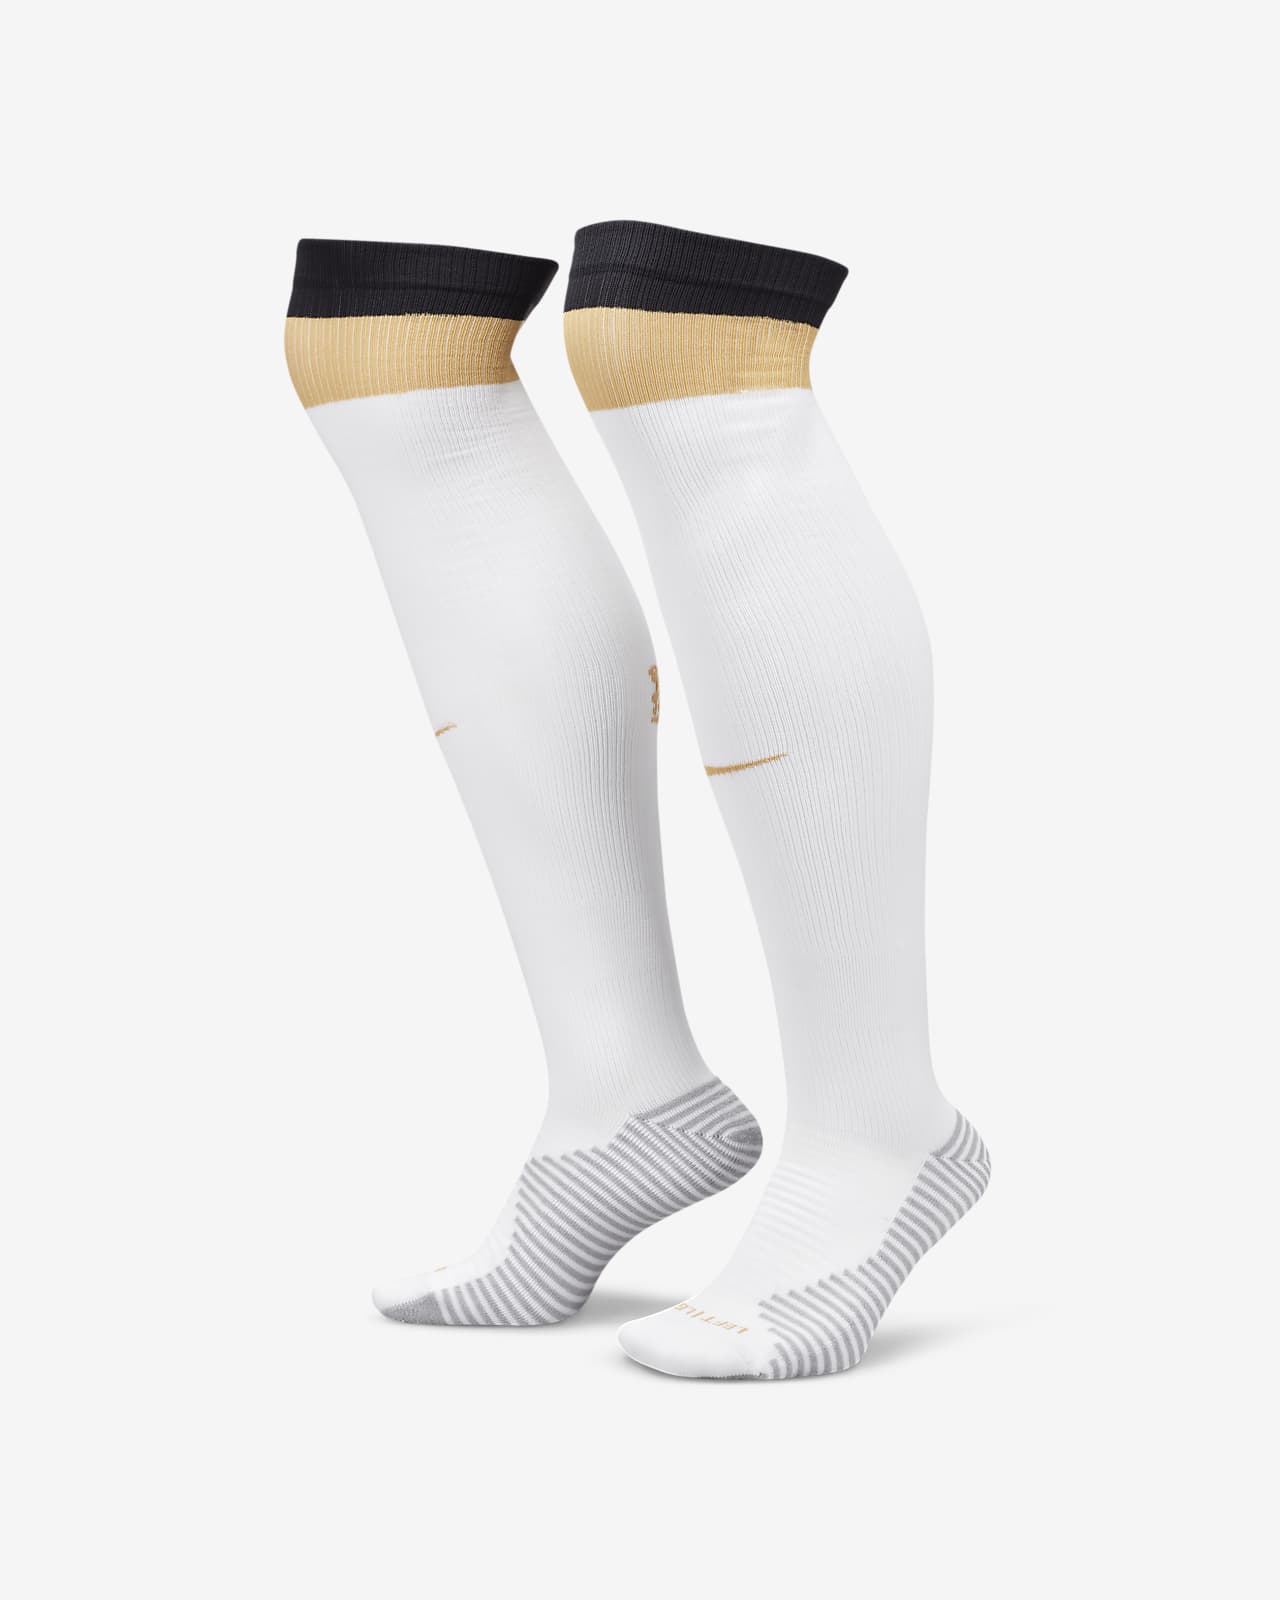 Chelsea FC Strike İç Saha/Deplasman Diz Boyu Futbol Çorapları